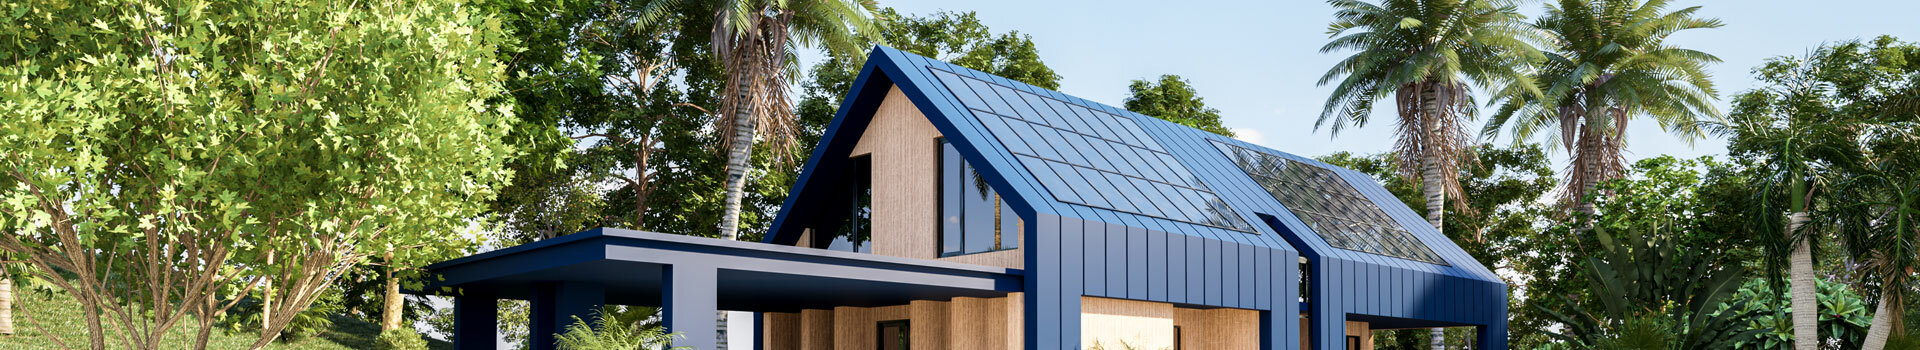 VSE Beaulieu installateur Quali PV | Panneaux solaire photovoltaïque